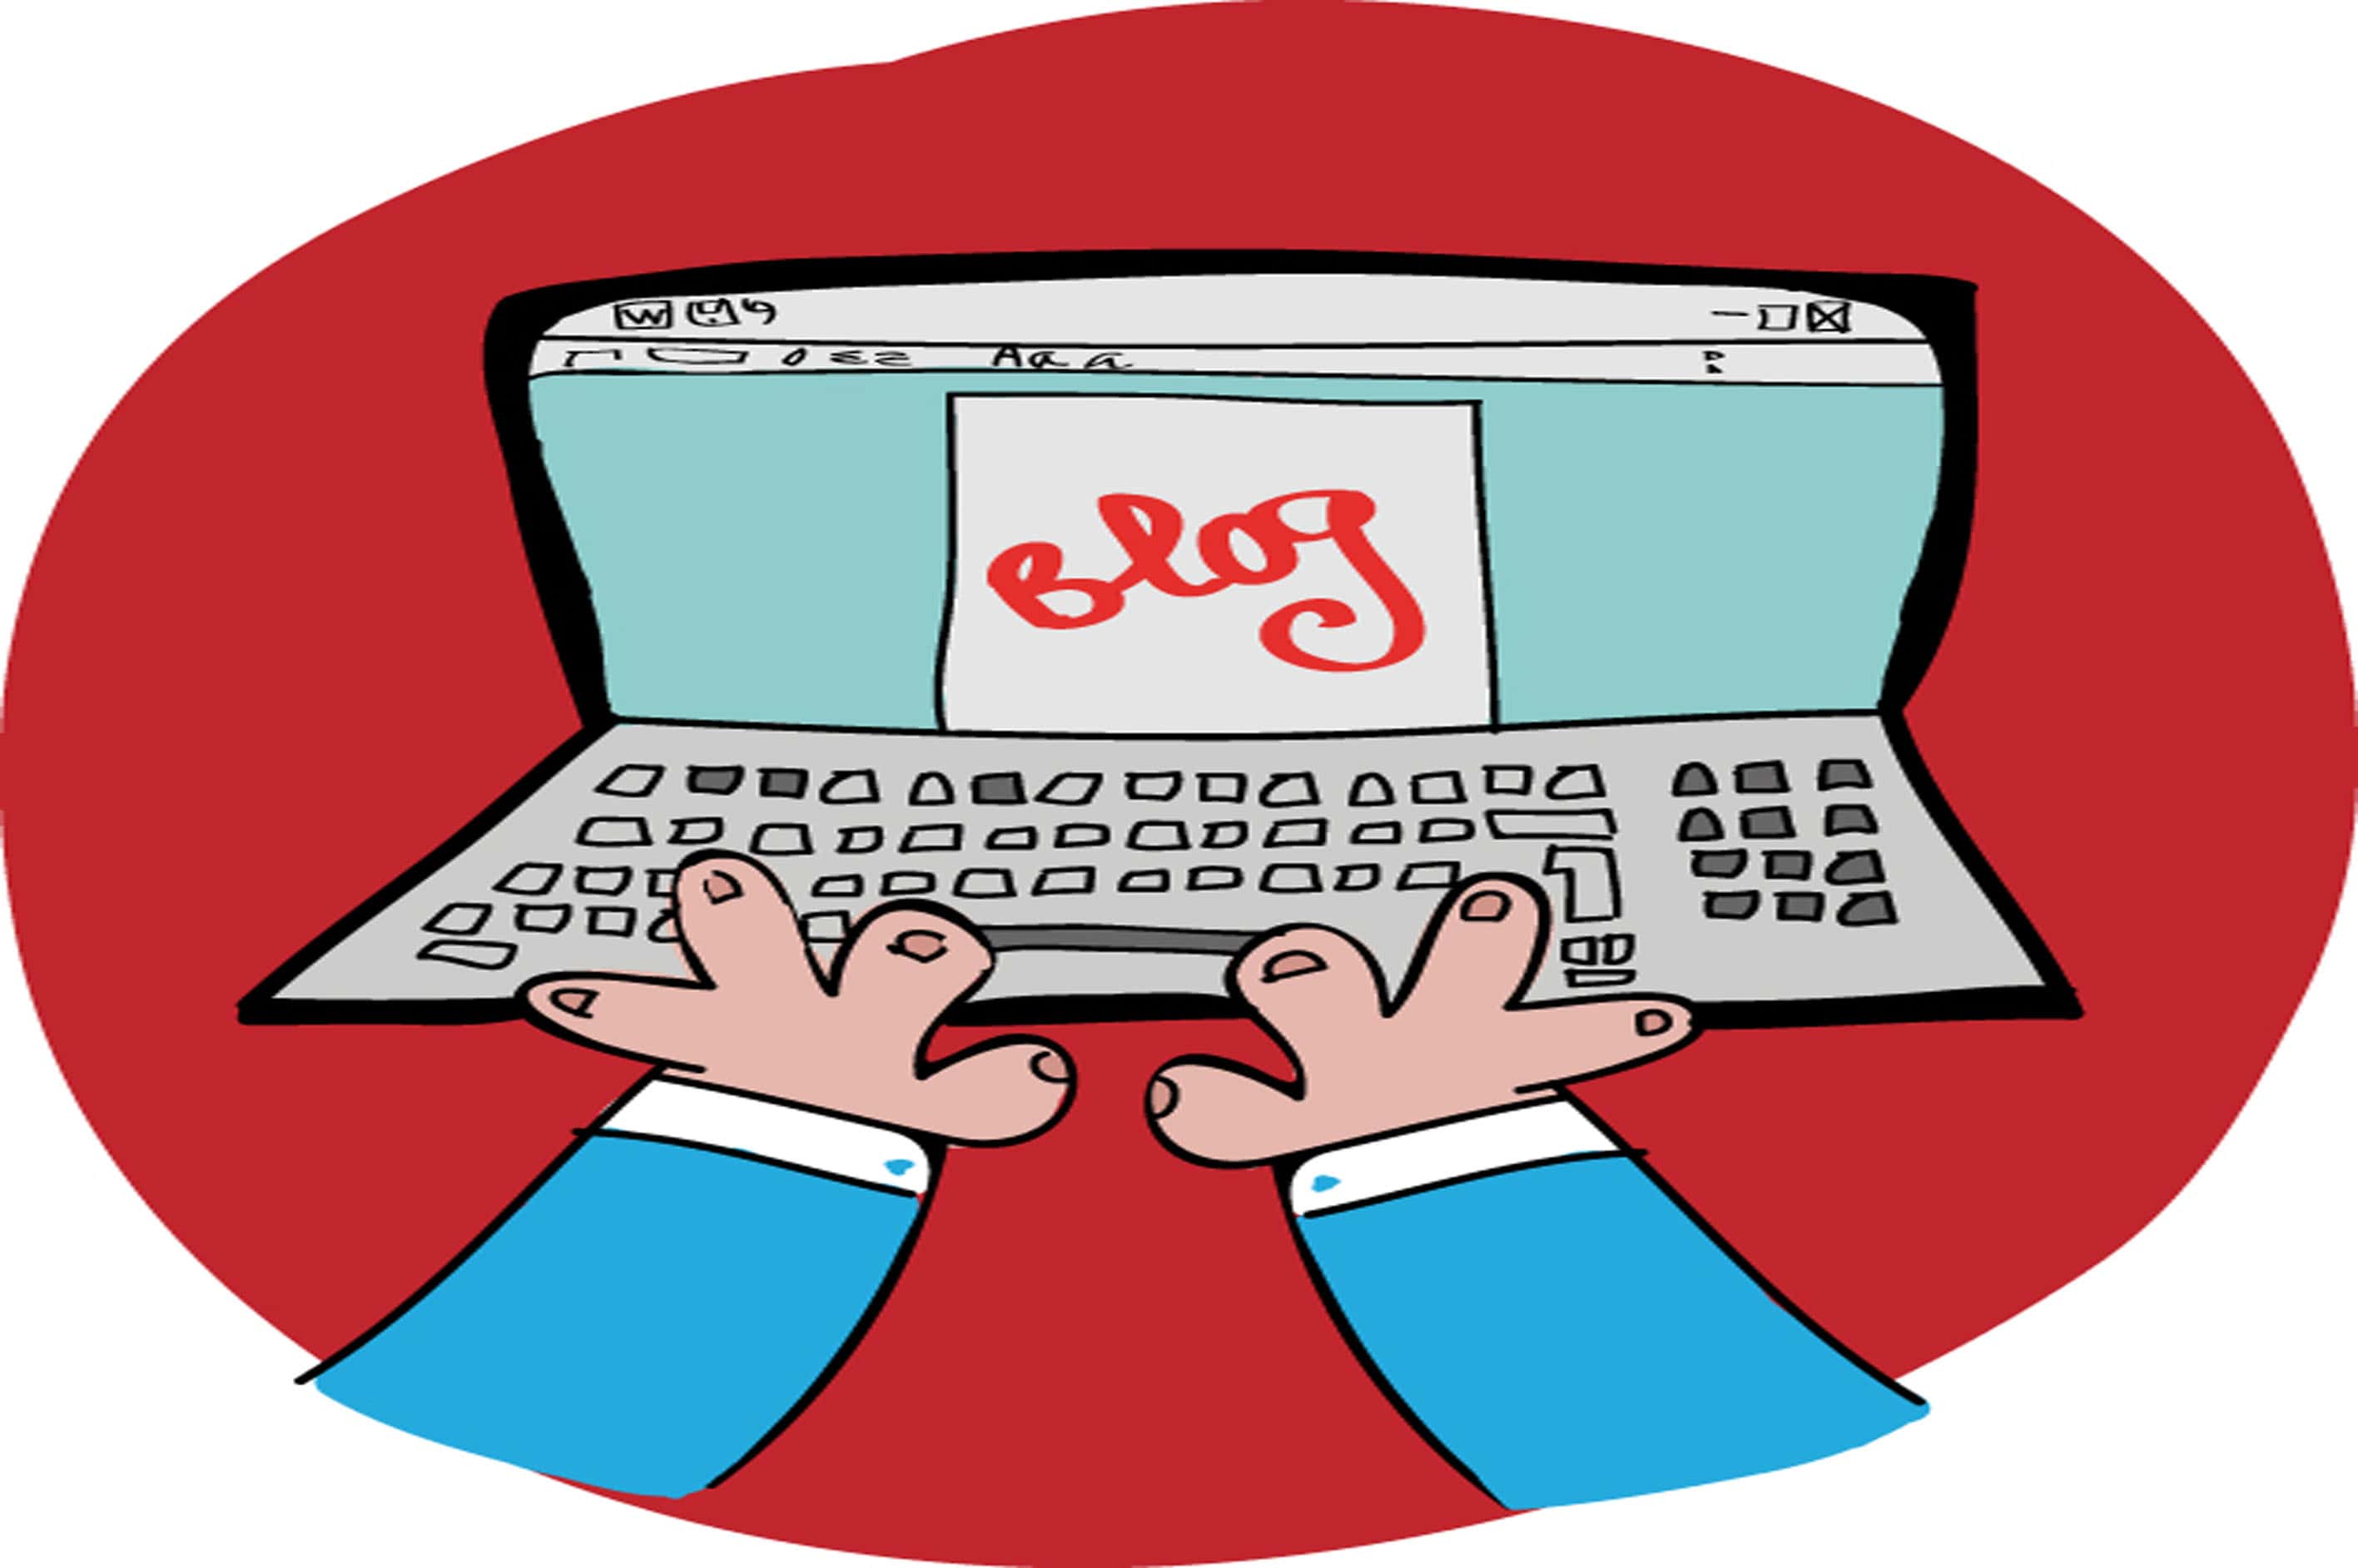 Una firma como Elzaburu incorpora a Elzabot  a su página web como asistente virtual